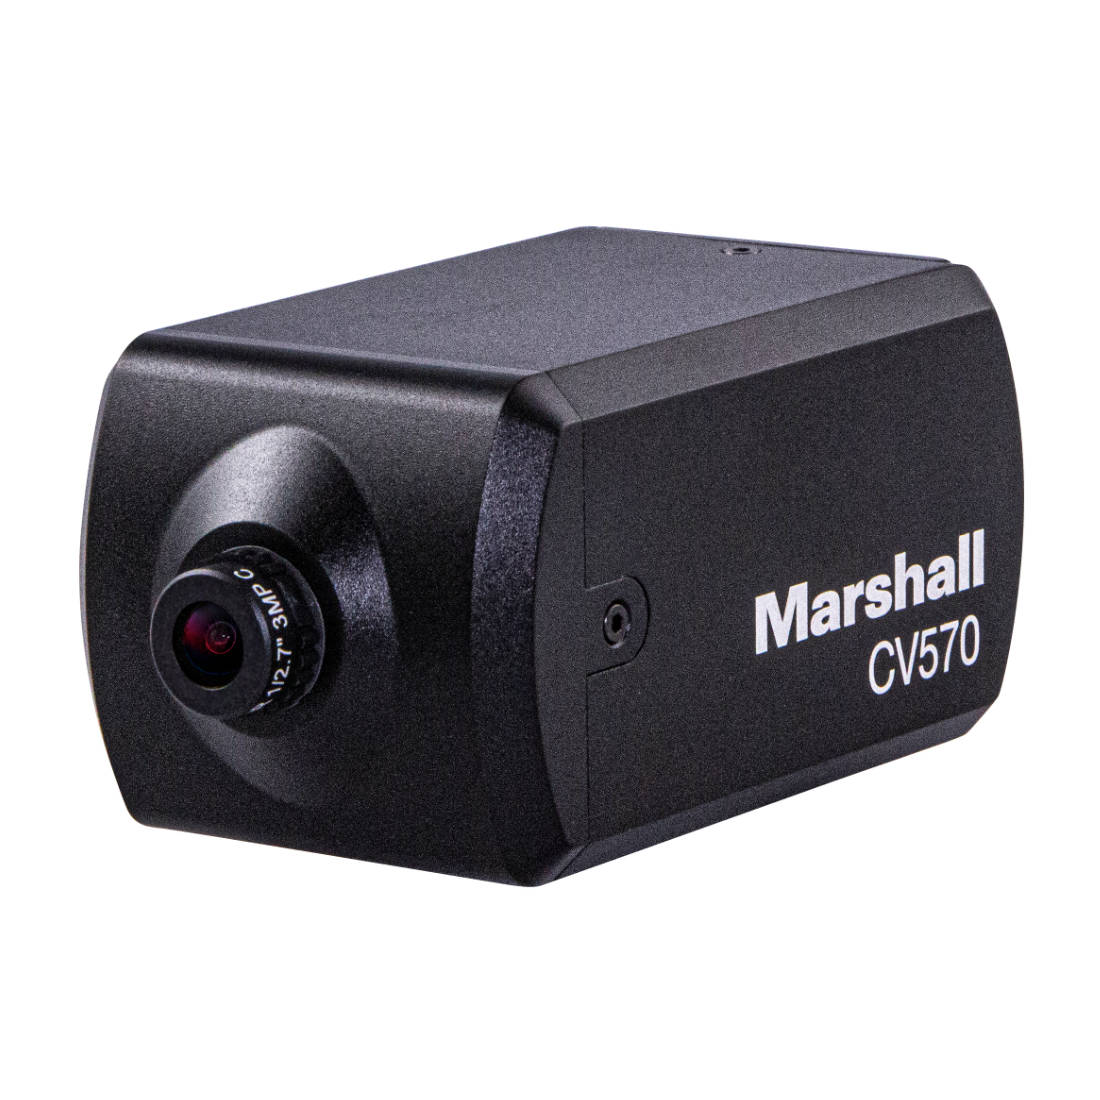 Marshall CV570